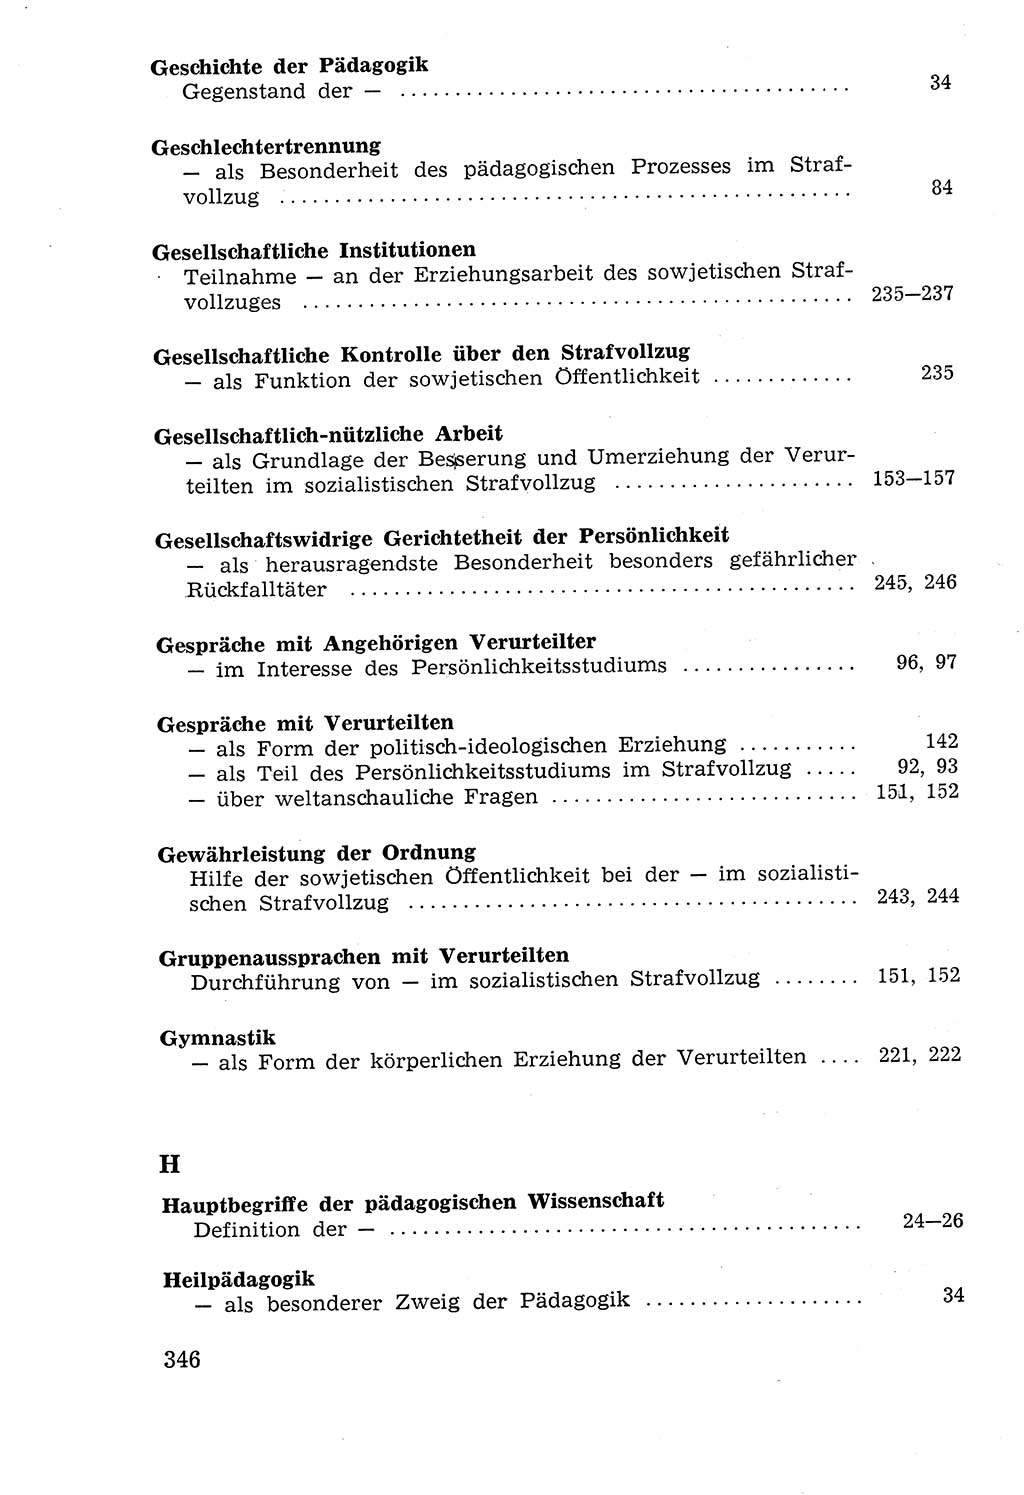 Lehrbuch der Strafvollzugspädagogik [Deutsche Demokratische Republik (DDR)] 1969, Seite 346 (Lb. SV-Pd. DDR 1969, S. 346)